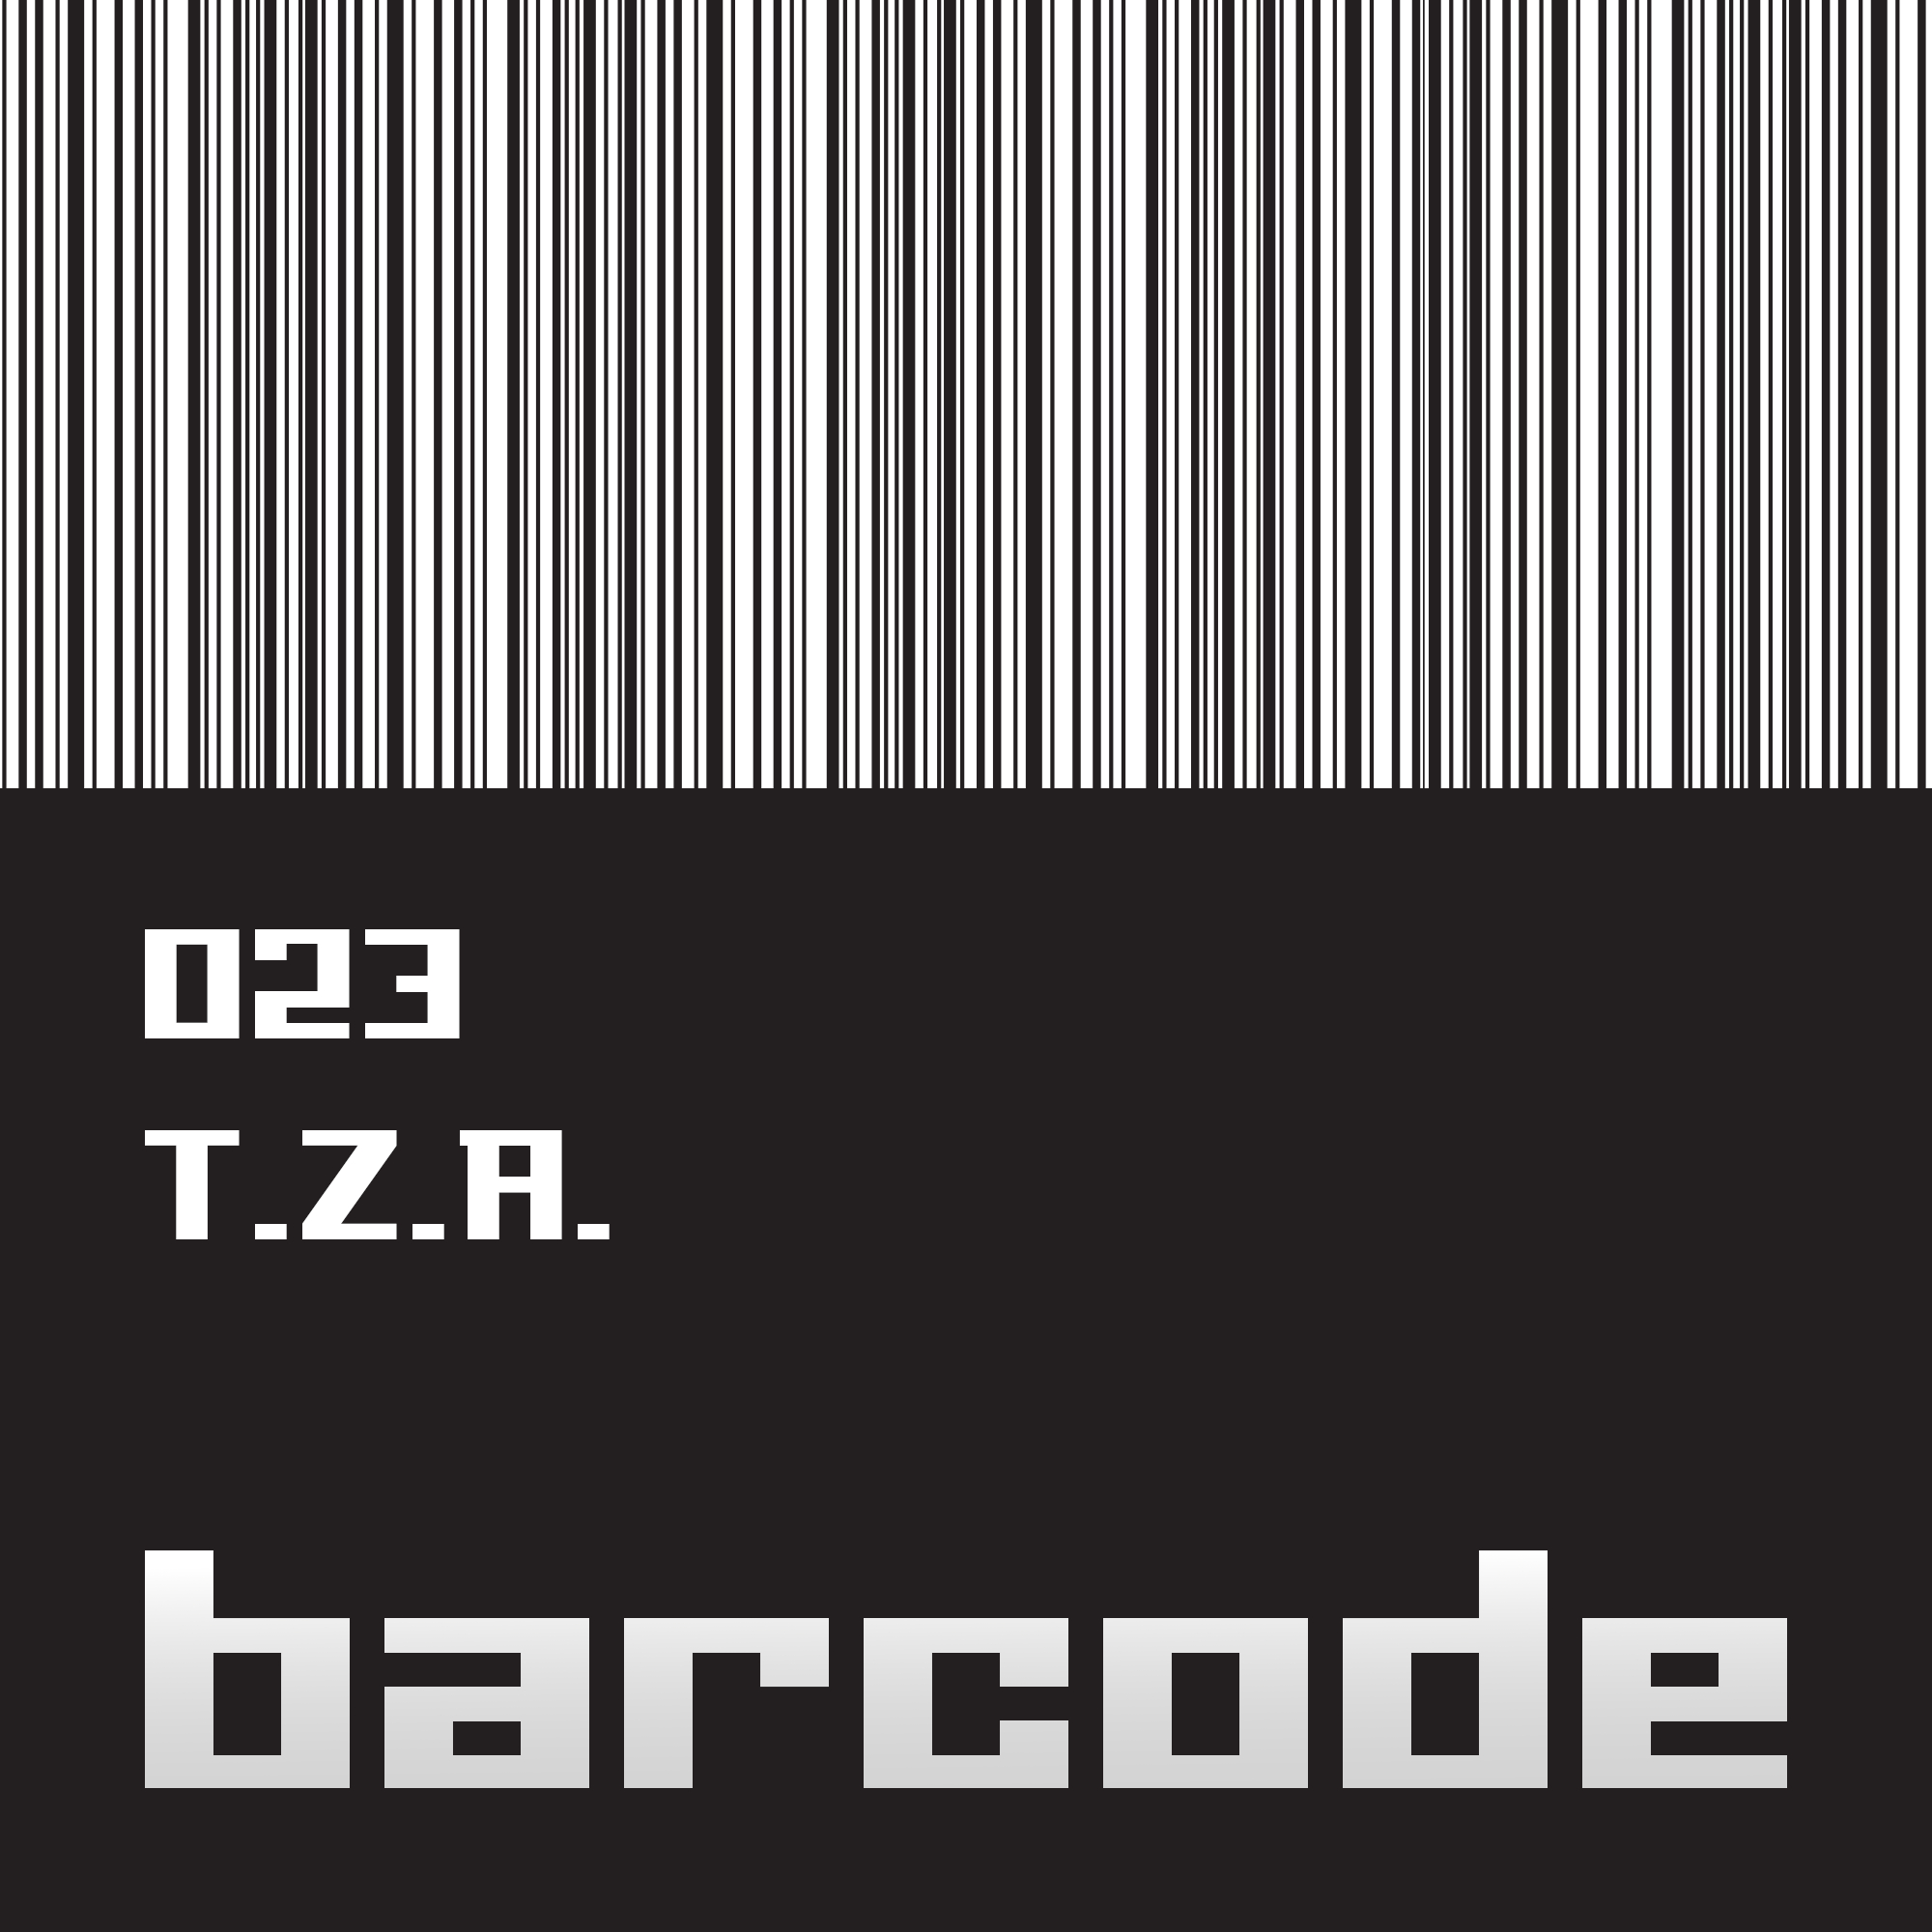 Barcode023.jpg